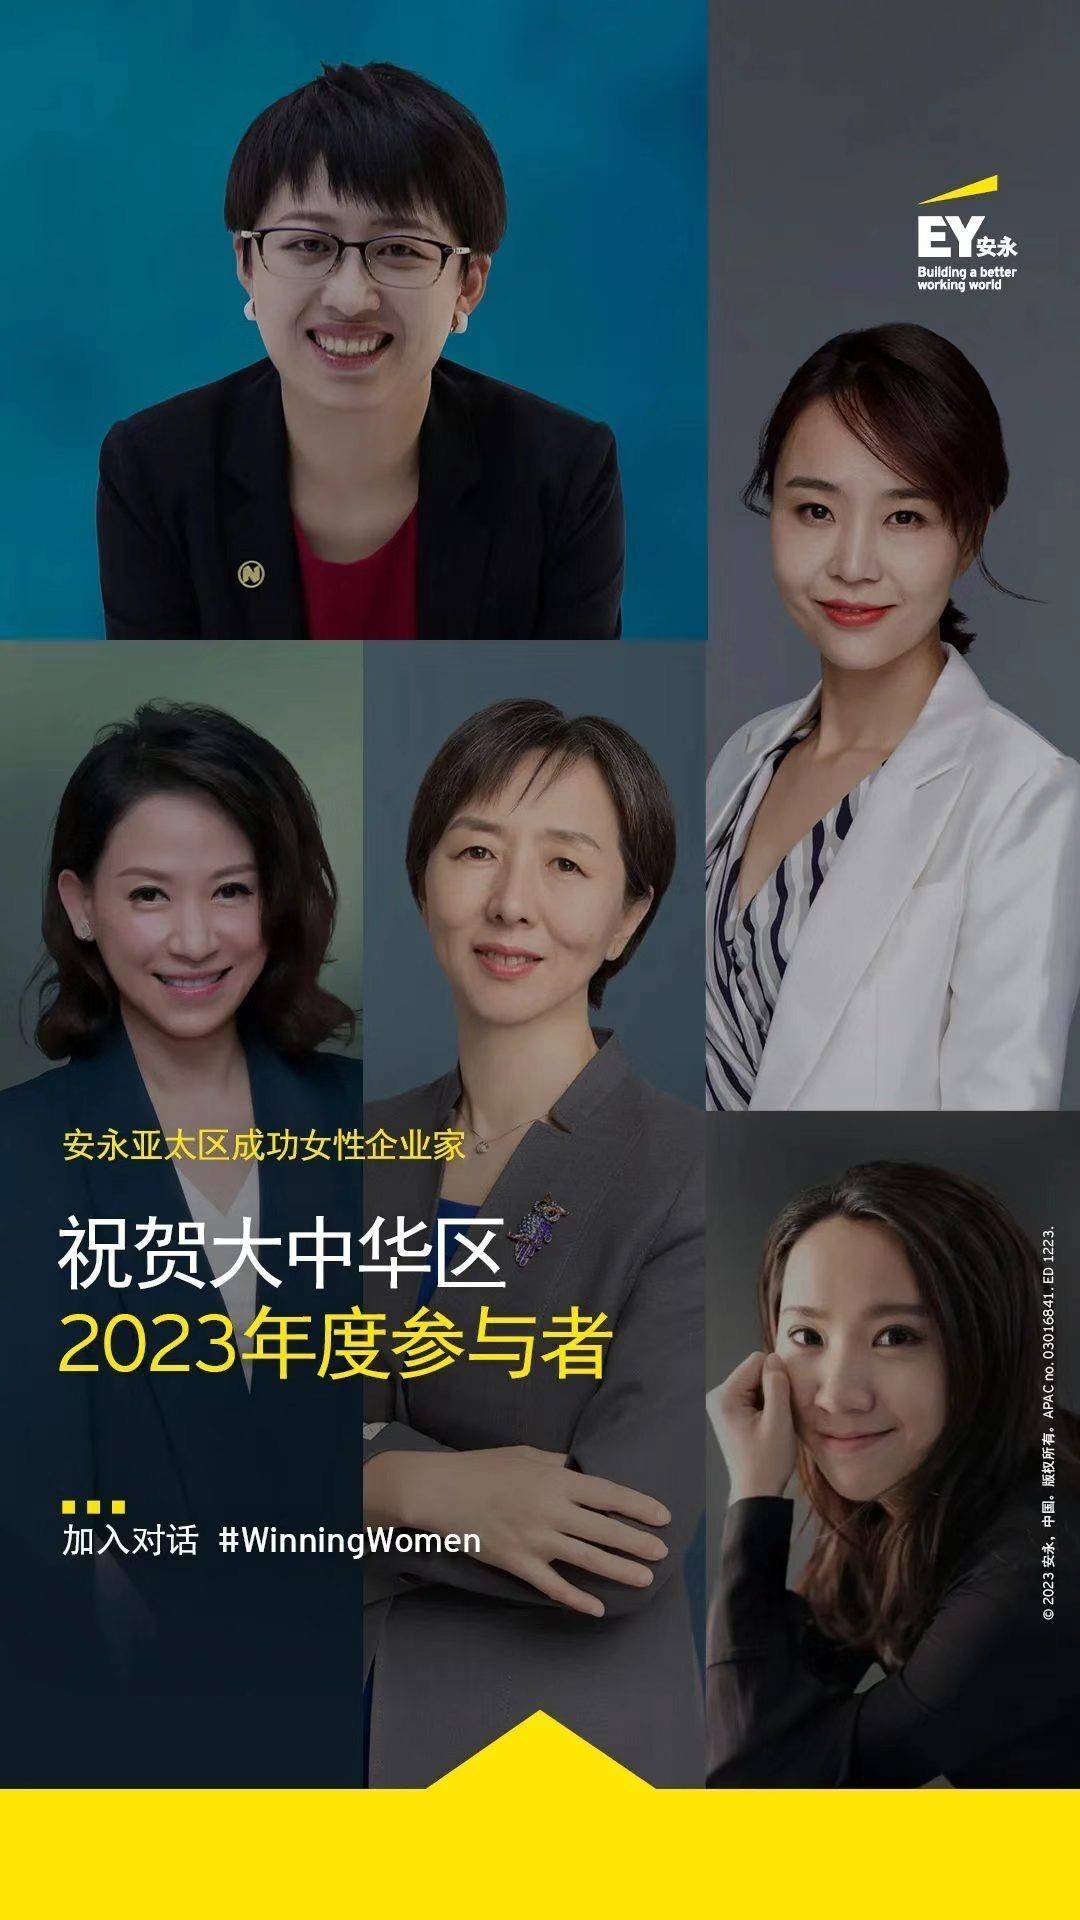 安永2023亚太区成功女企业家项目：快看世界陈安妮等五位中国女性入选